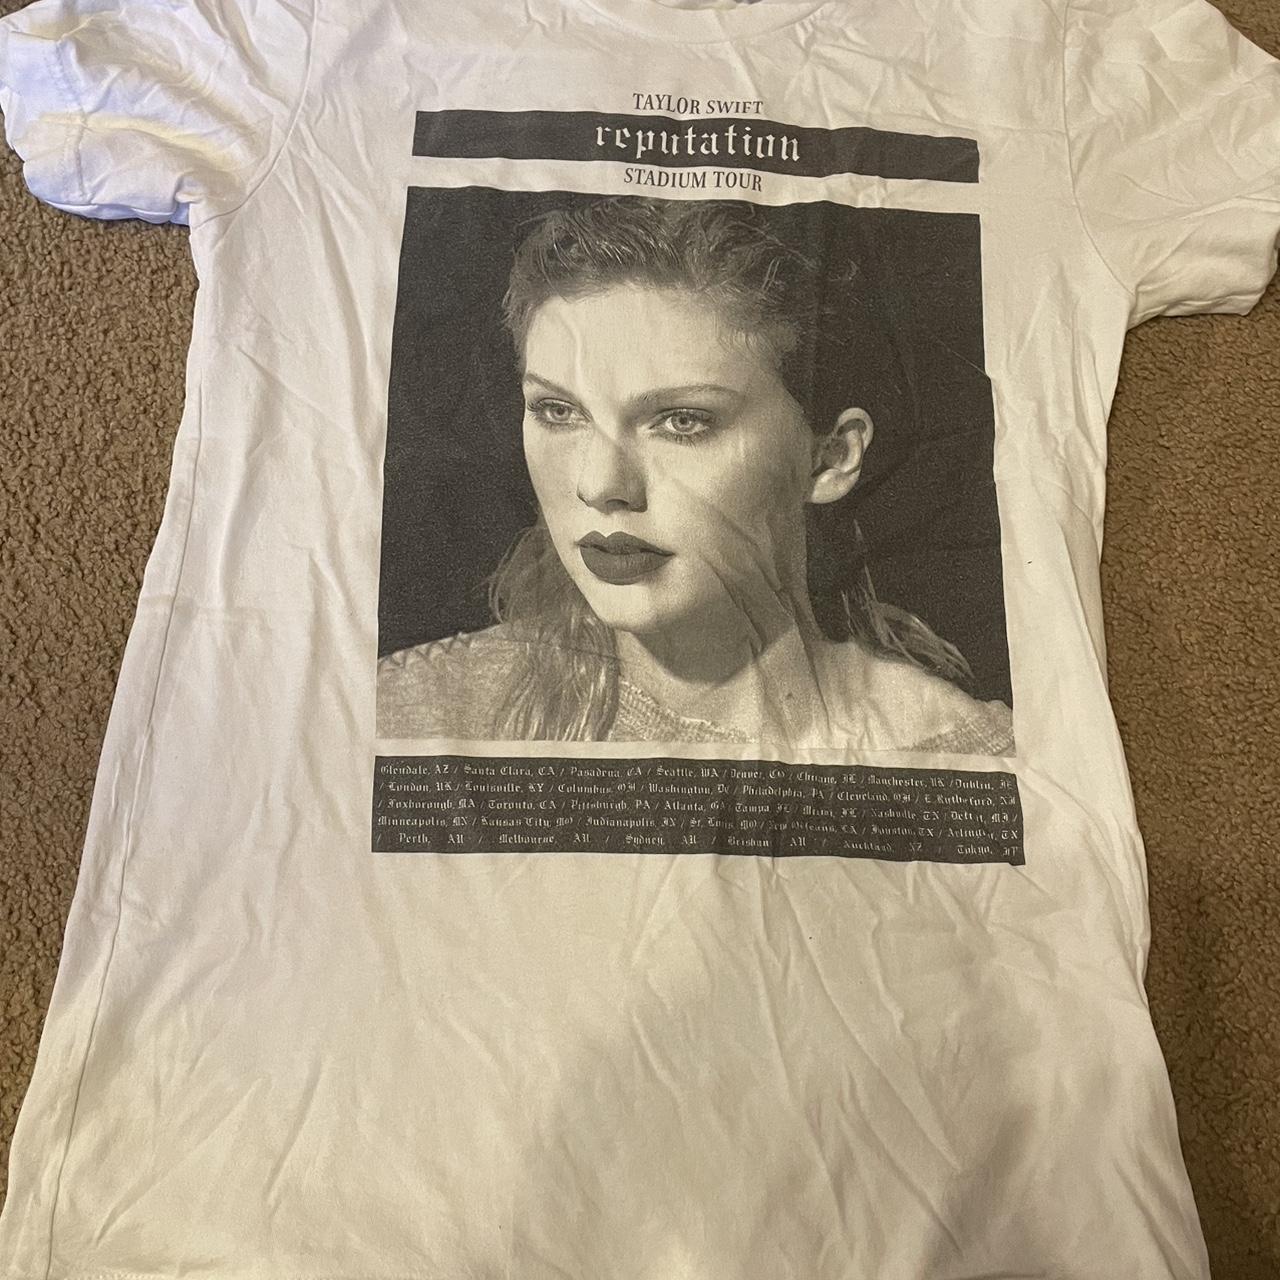 Vintage Taylor Swift Reputation t shirt! - Depop